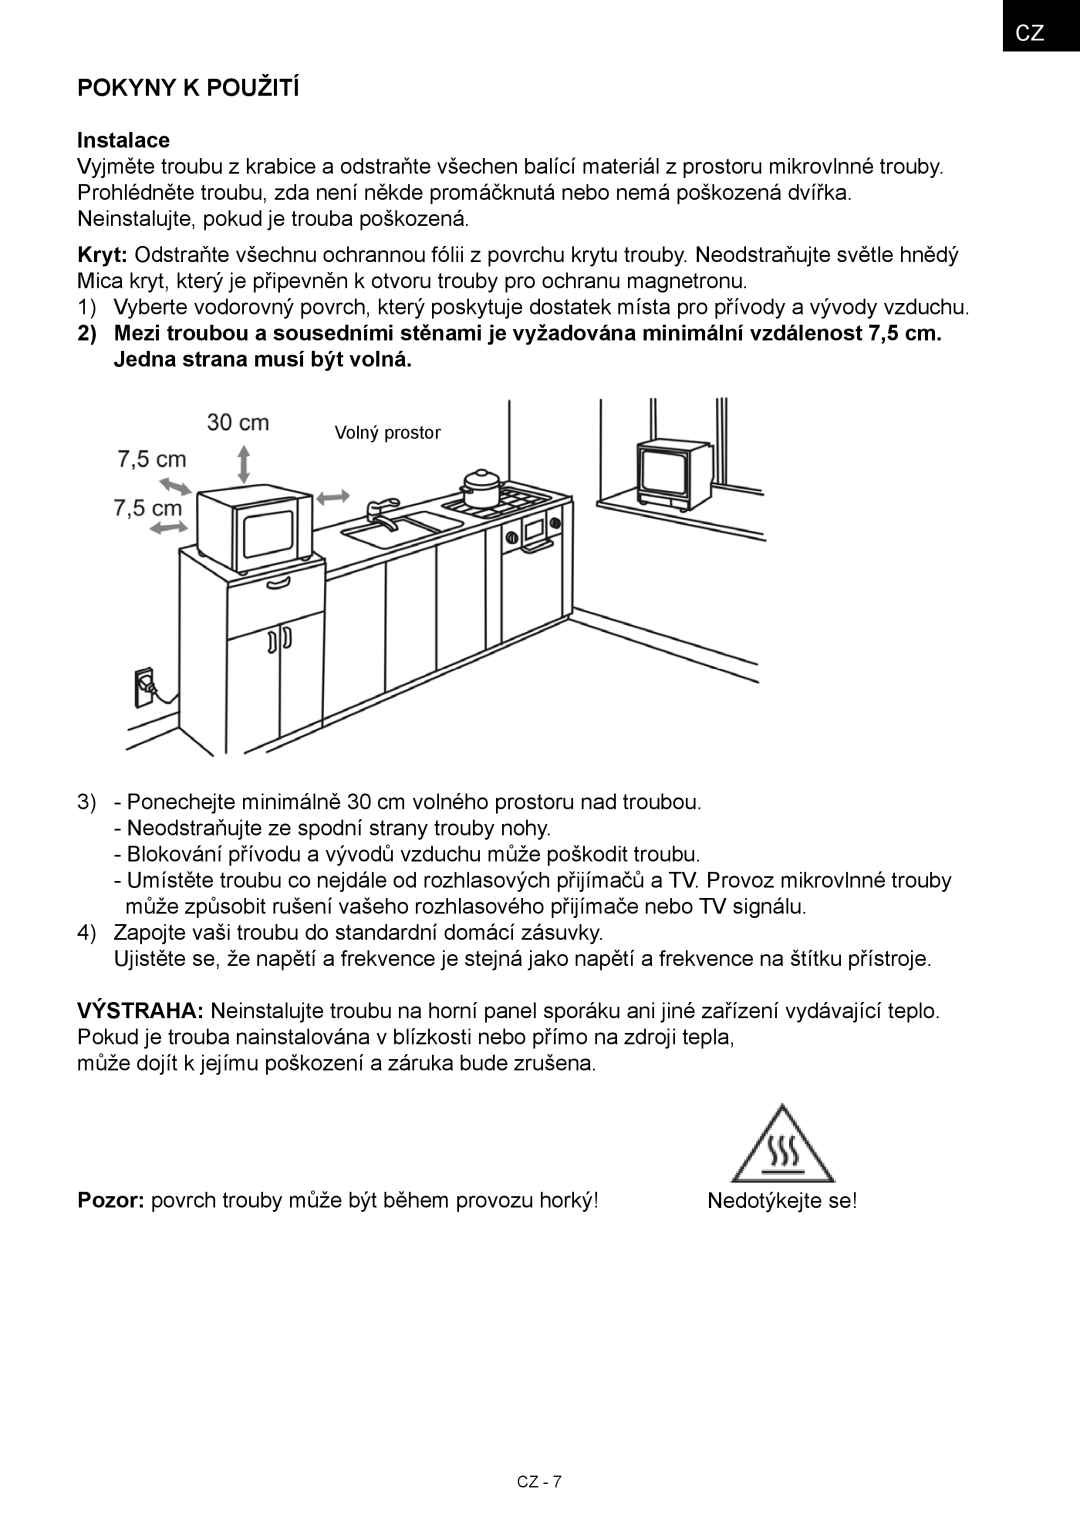 Hyundai MWEGH 281S manual Pokyny k použití, Instalace 